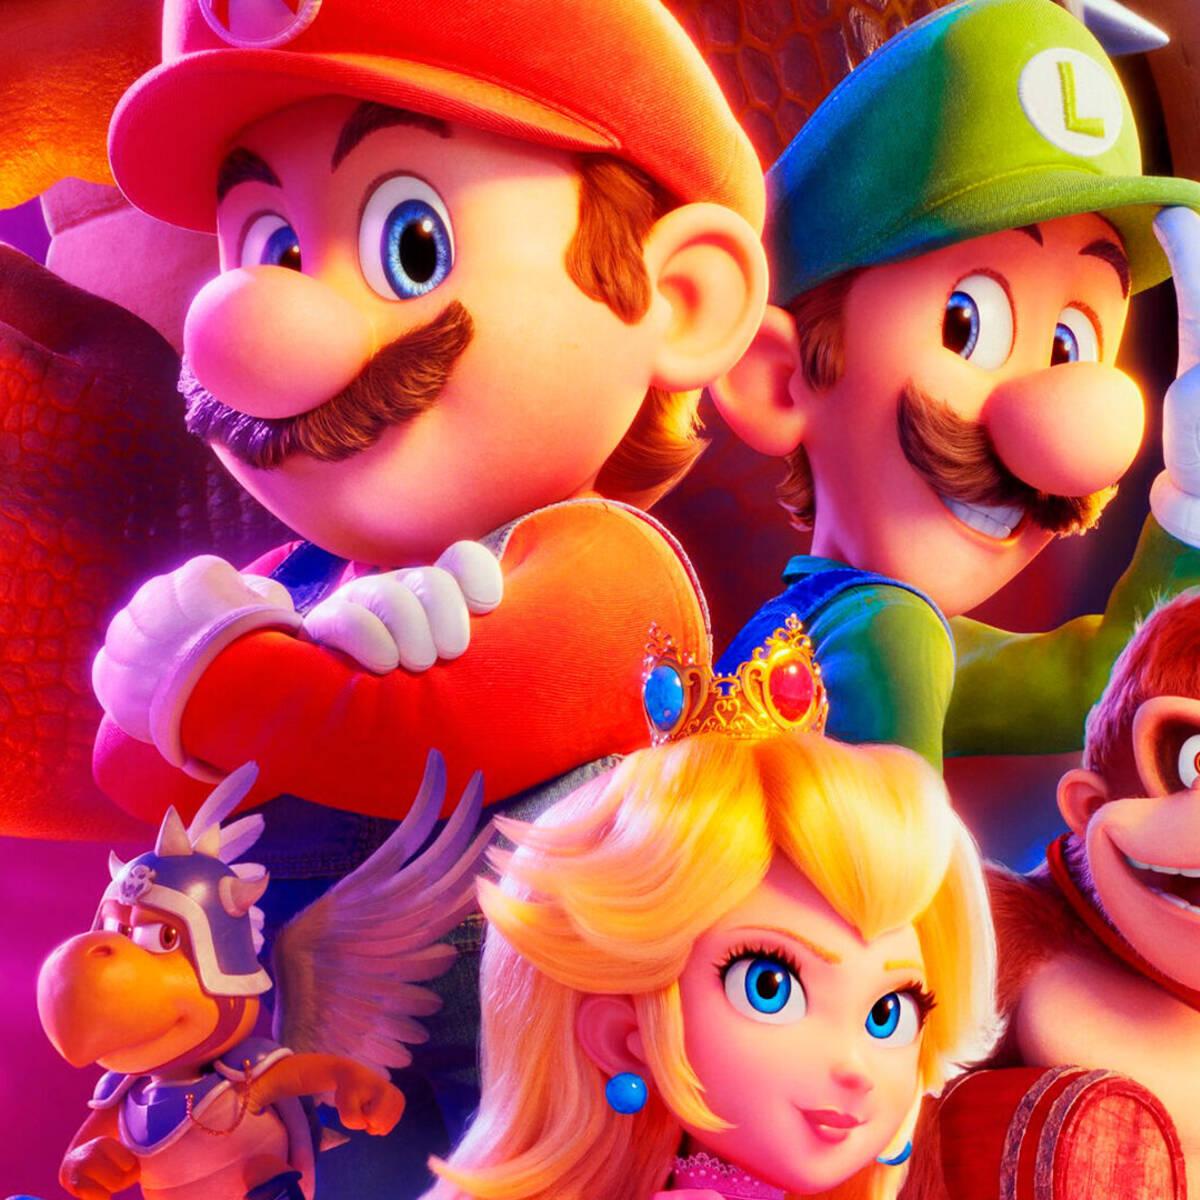 Crítica: Super Mario Bros. é uma carta de homenagem à franquia